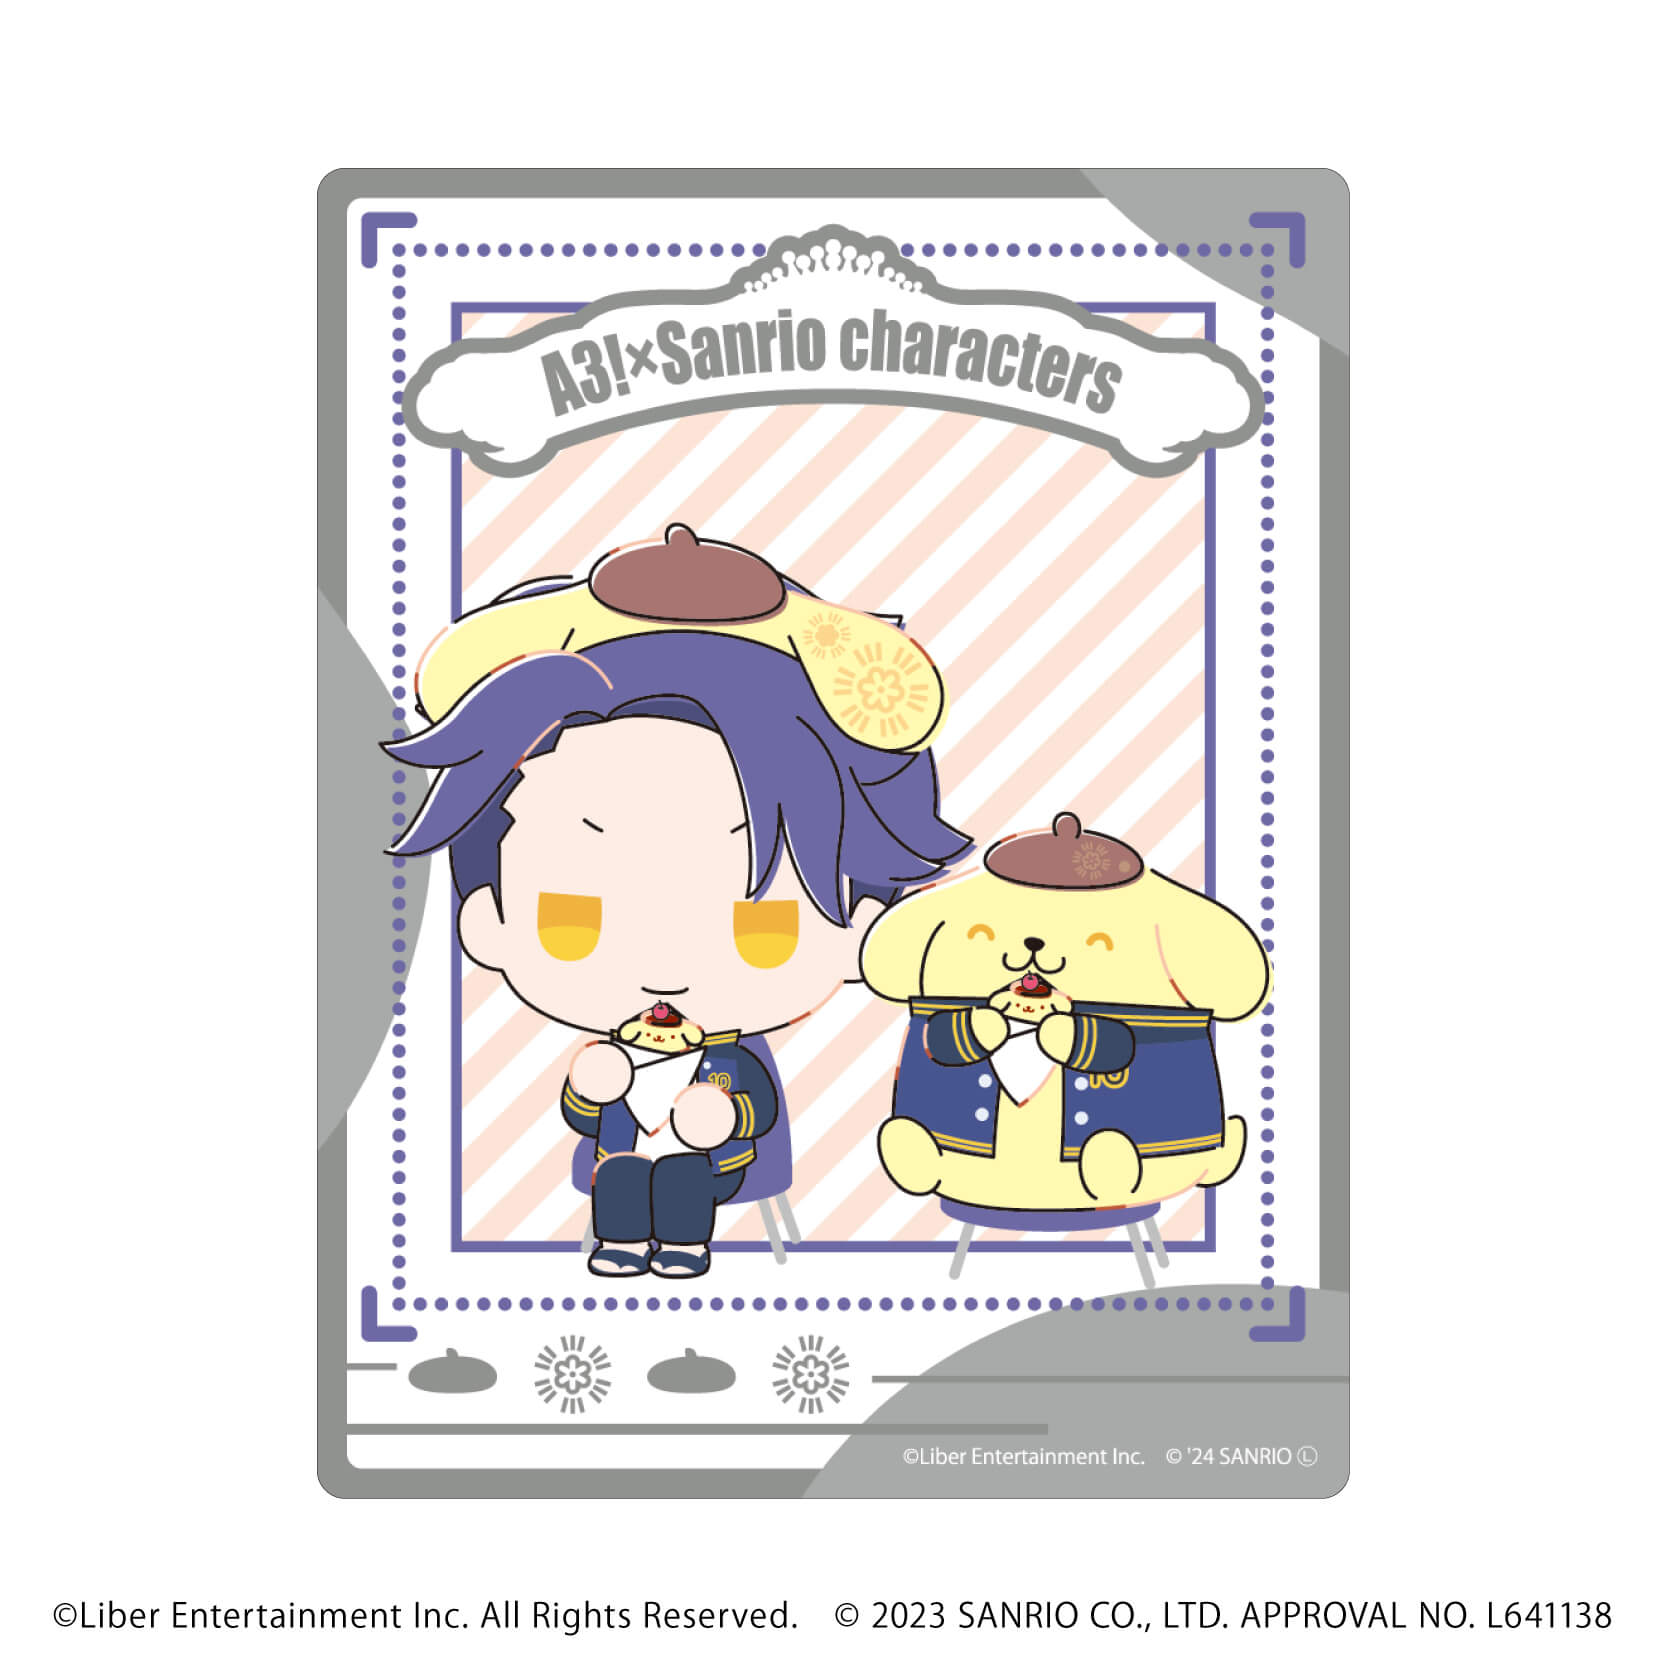 アクリルカード「A3!×Sanrio characters」10/A＆W コンプリートBOX(全12種)(ミニキャライラスト)